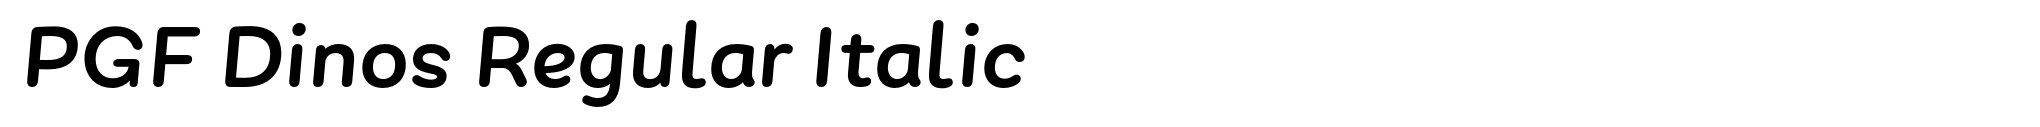 PGF Dinos Regular Italic image